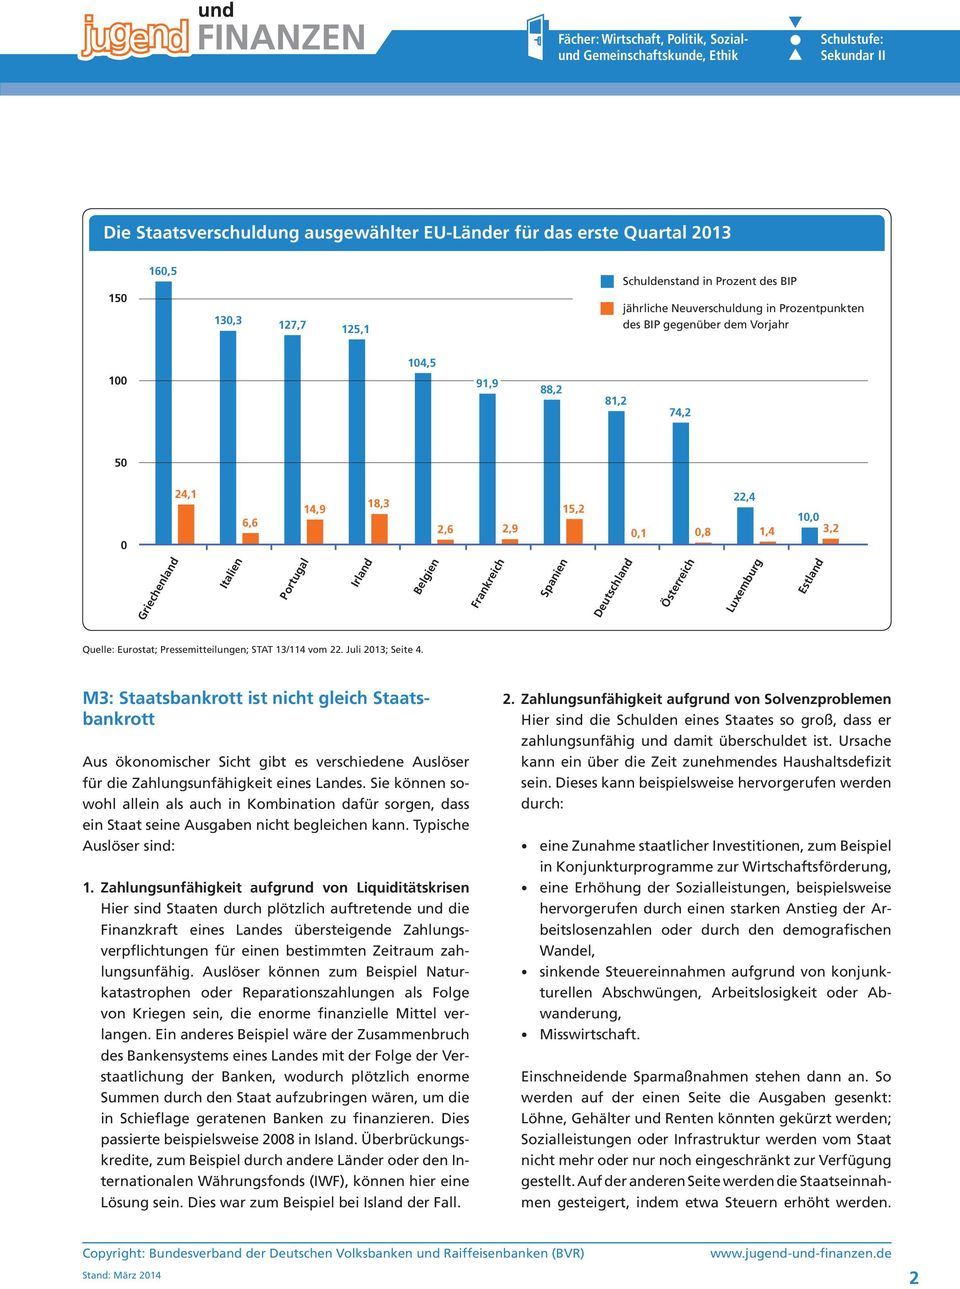 Estland Quelle: Eurostat; Pressemitteilungen; STAT 13/114 vom 22. Juli 2013; Seite 4.